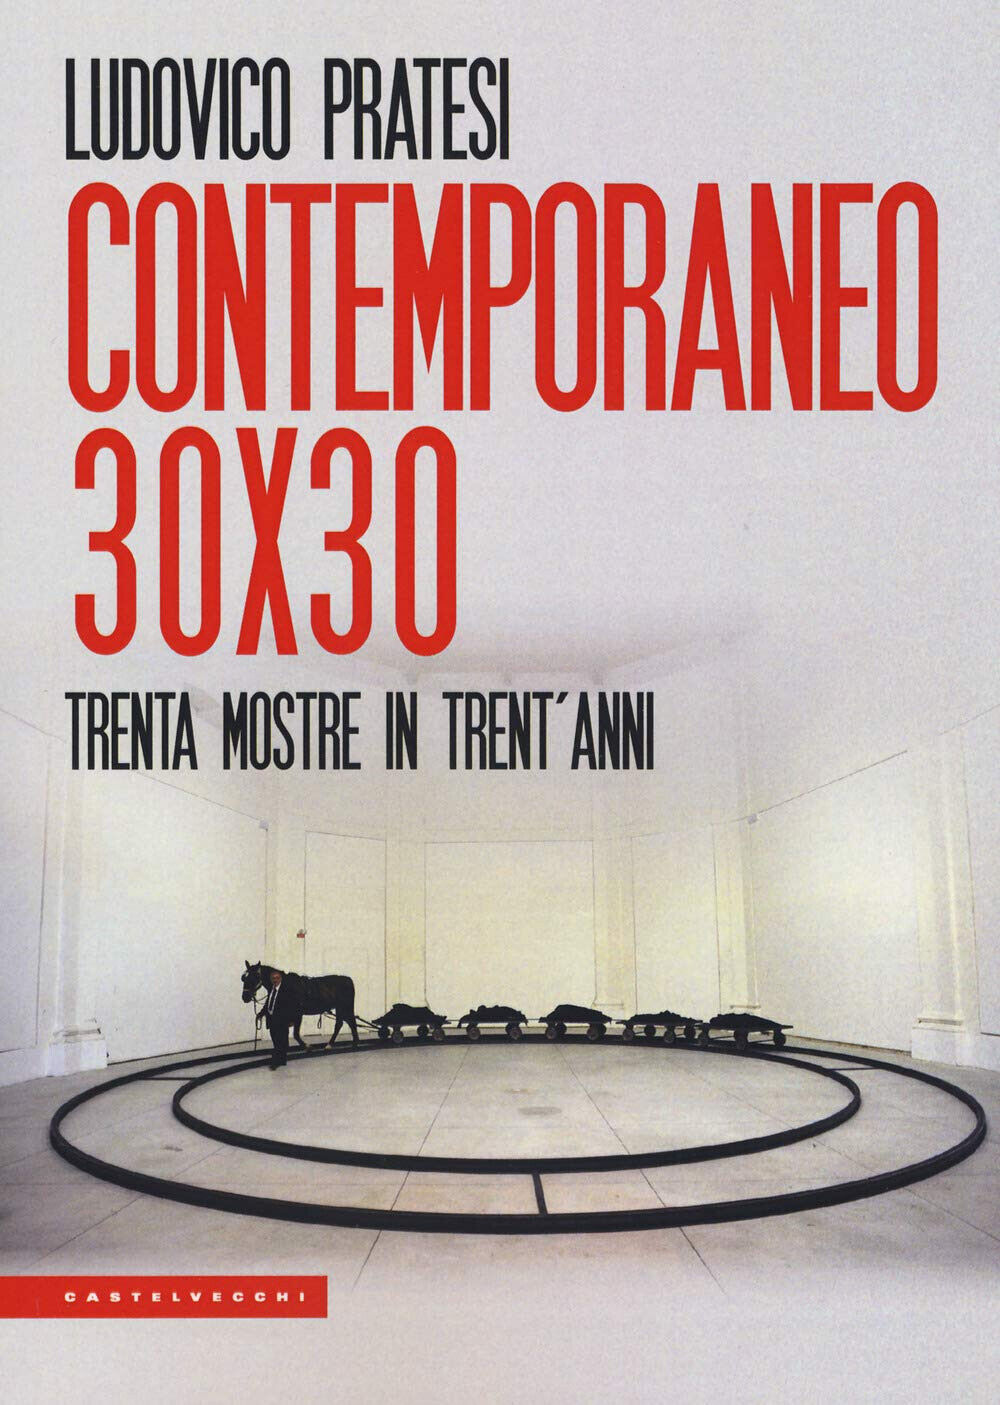 Contemporaneo 30x30 - Ludovico Pratesi - Castelvecchi, 2019